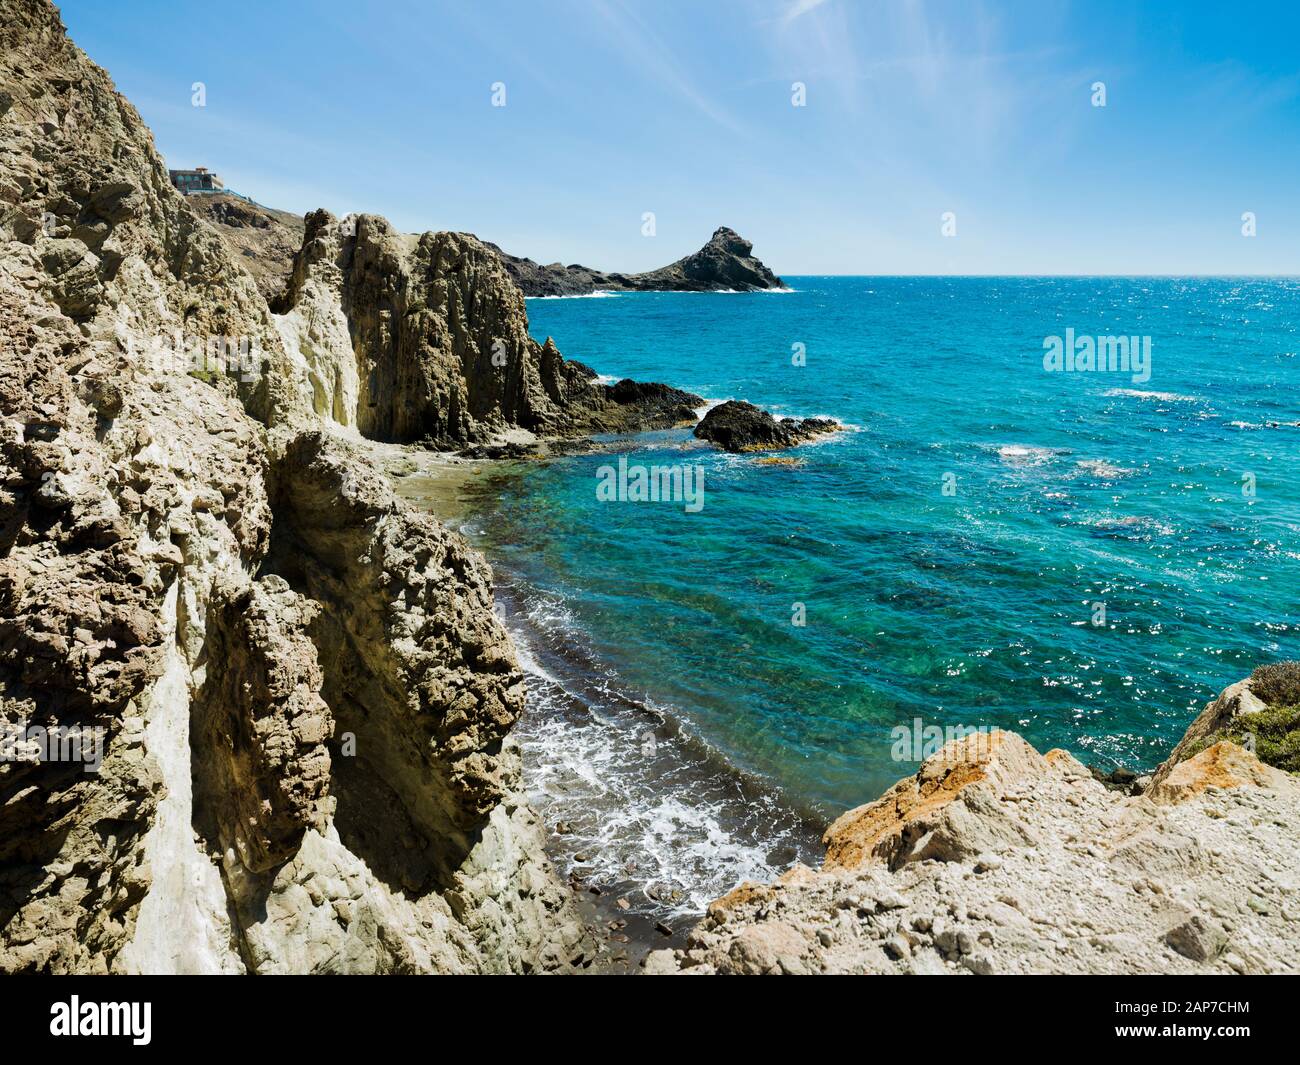 Arrecife De Las Sirenas, Parque Natural Cabo de Gata-Níjar, Metropolitana de Níjar, Almería, Almería, Andalusien, Spanien, Europa Stockfoto